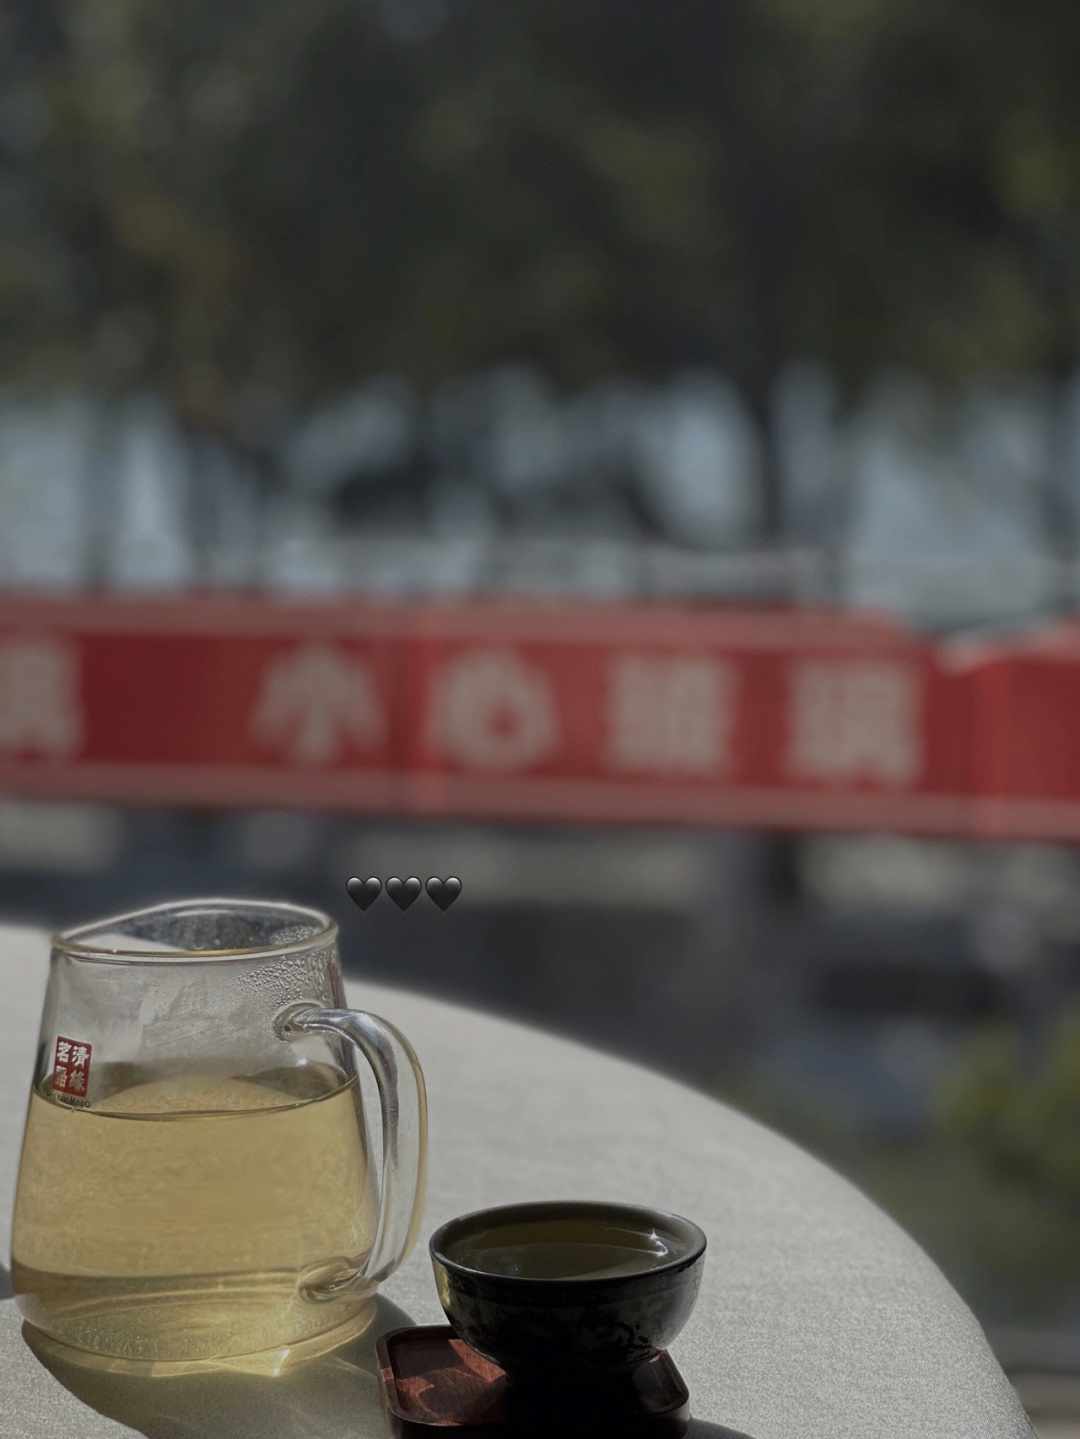 惠州西湖宾馆早茶图片